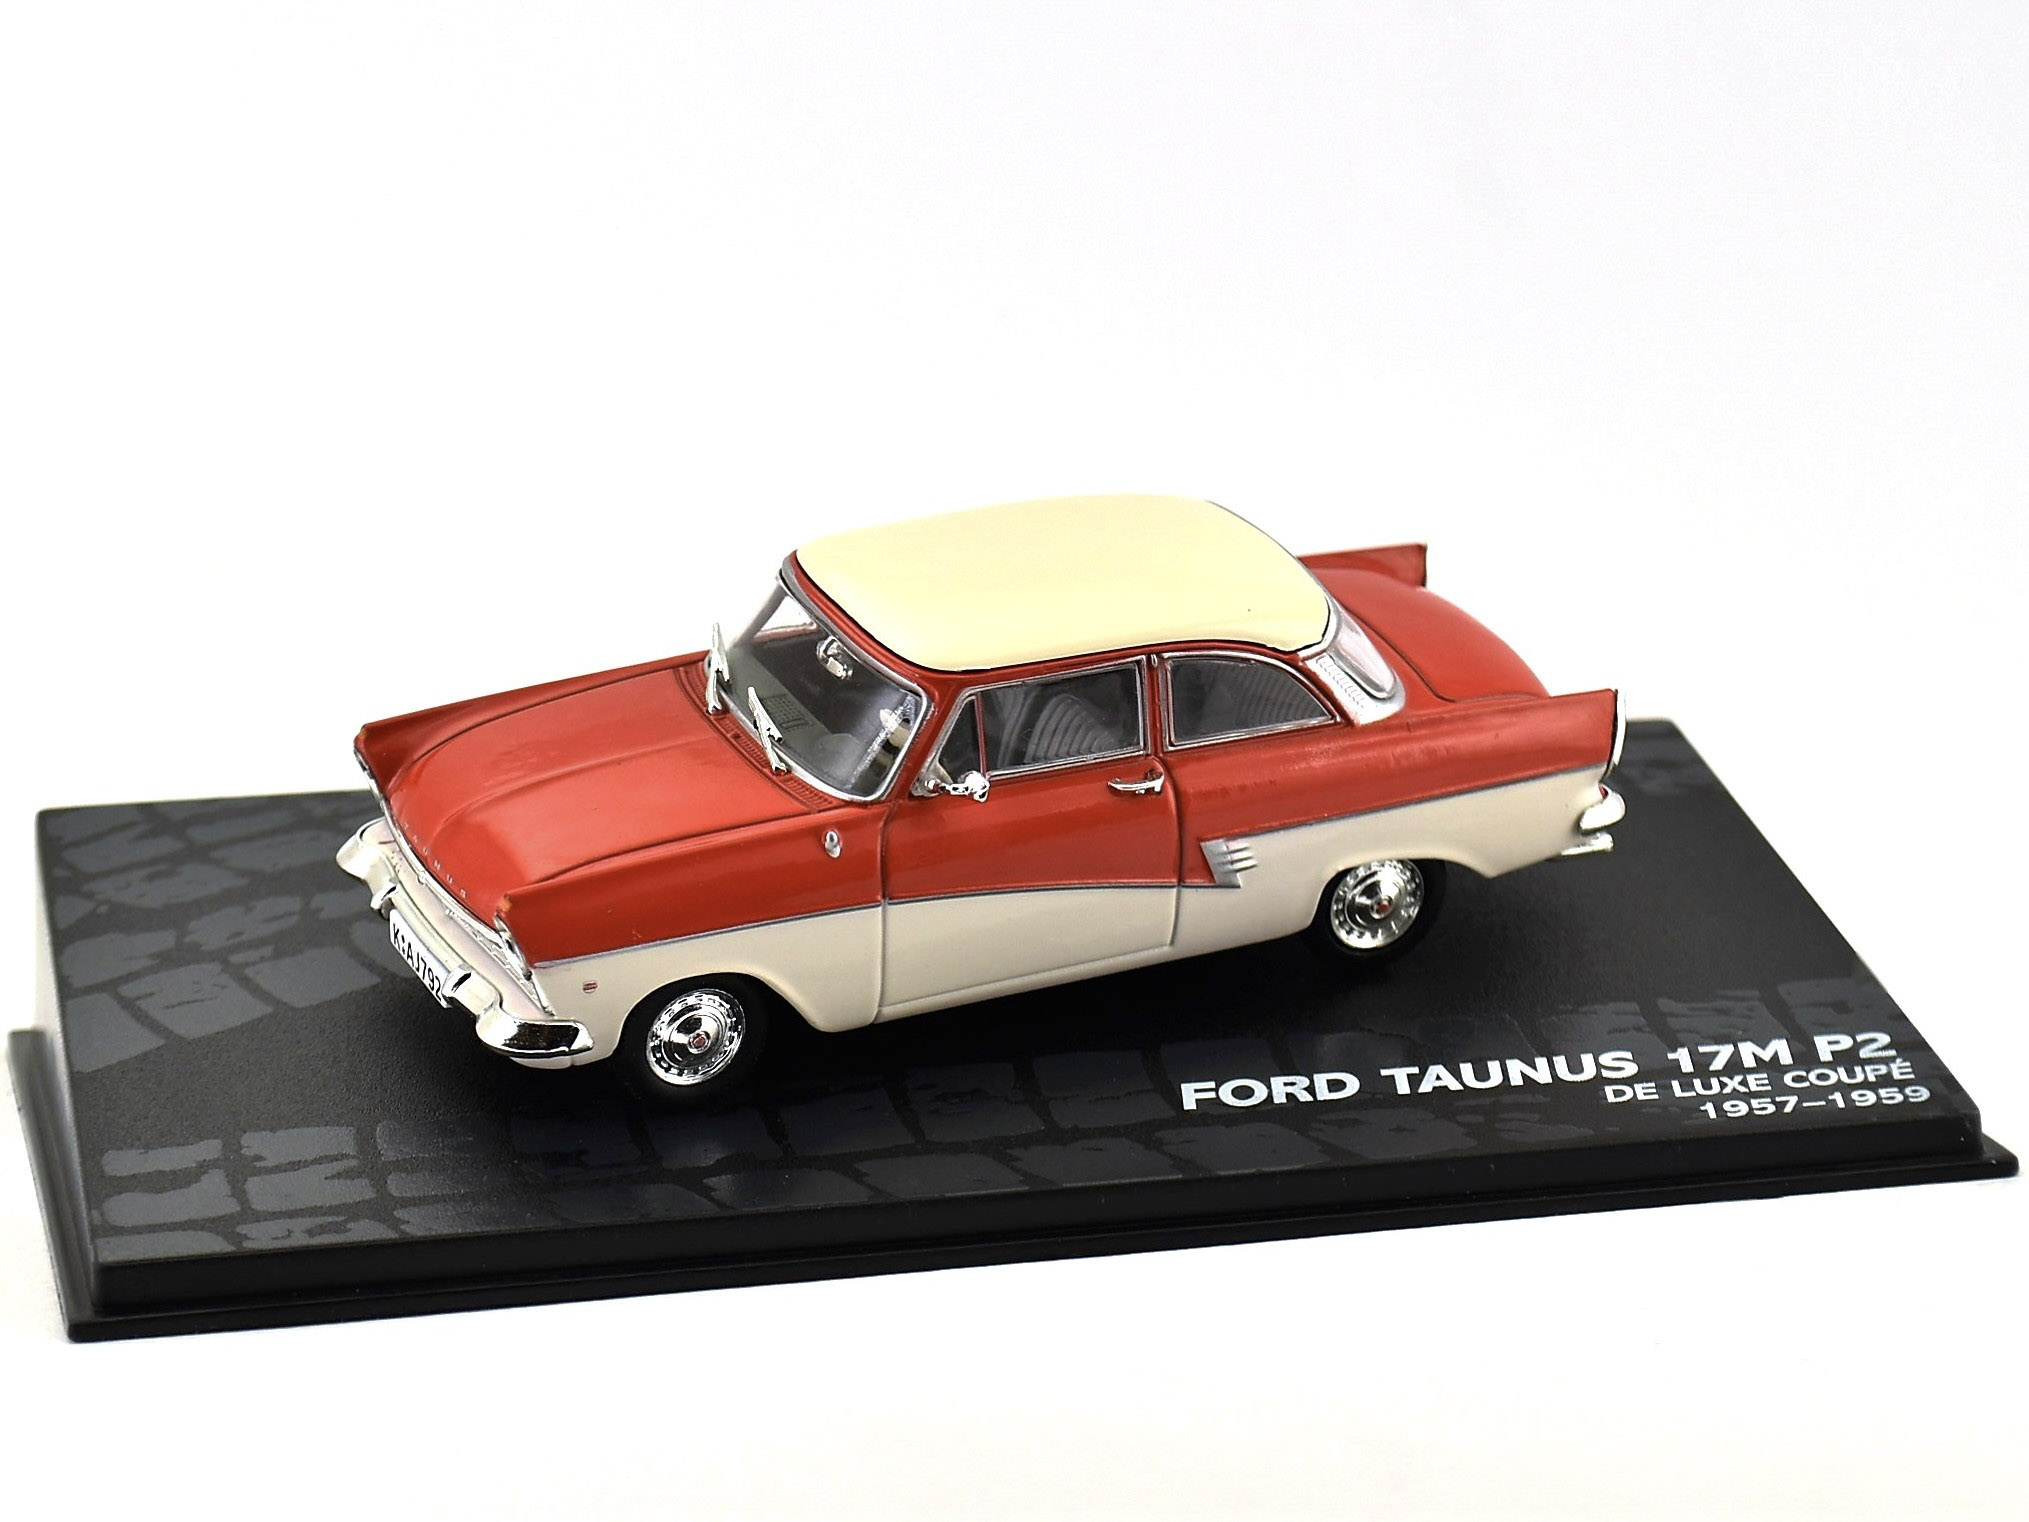 FORD TAUNUS 17M P2 - De Luxe Coupè - 1957-1959